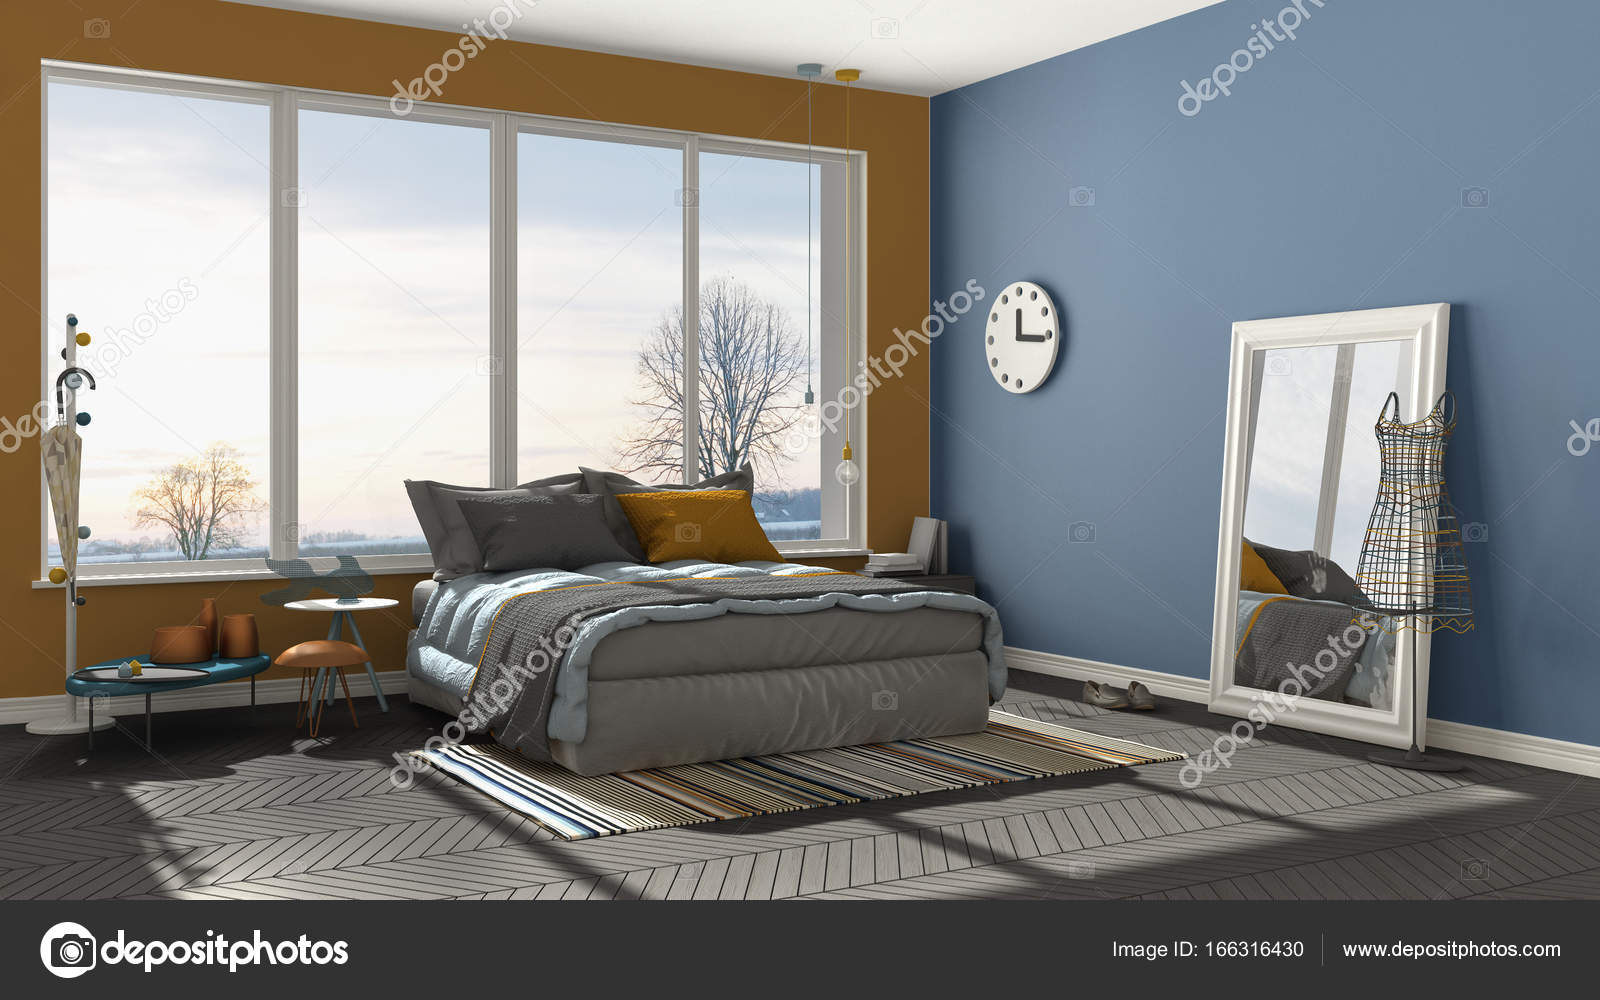 Dormitorio moderno de color azul y naranja con gran ventana panorámica